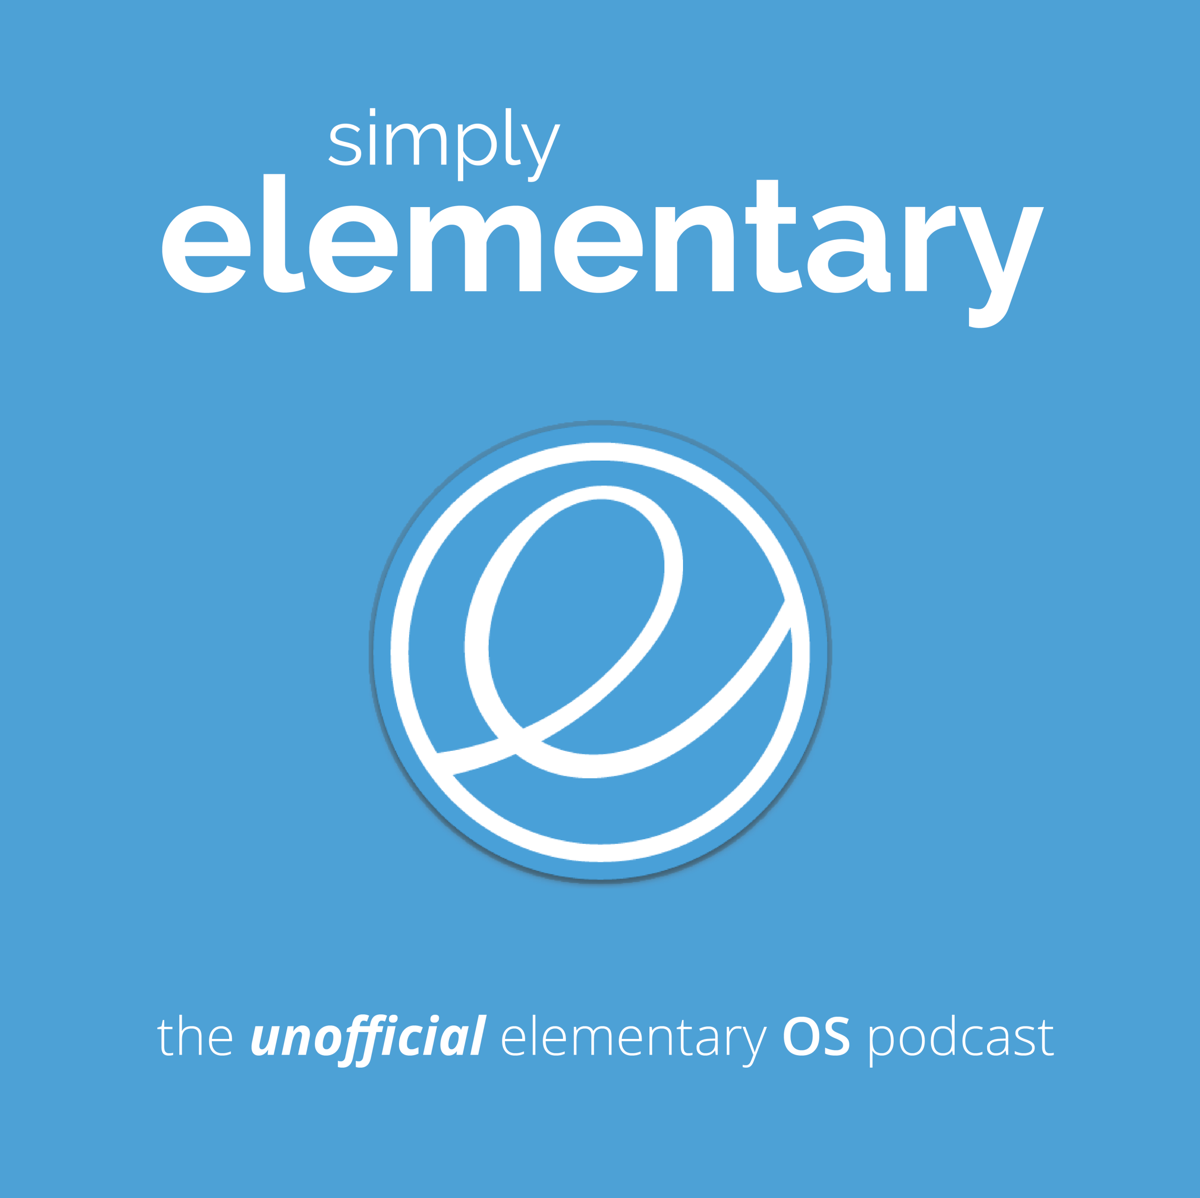 Земля в элементари песня. Элементари. Elementary os Loki. Elementary os logo. Simple elements.